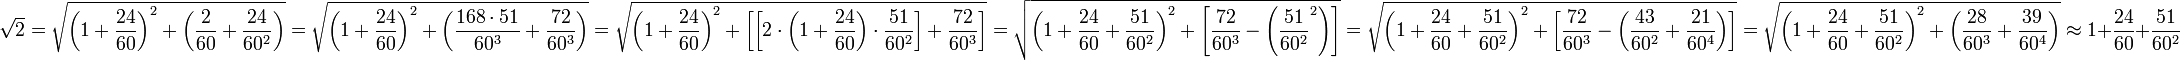 \sqrt{2}=\sqrt{\left(1+\frac{24}{60}\right)^2+\left(\frac{2}{60}+\frac{24}{60^2}\right)}=\sqrt{\left(1+\frac{24}{60}\right)^2+\left(\frac{168\sdot51}{60^3}+\frac{72}{60^3}\right)}=\sqrt{\left(1+\frac{24}{60}\right)^2+\left[\left[2\sdot\left(1+\frac{24}{60}\right)\sdot\frac{51}{60^2}\right]+\frac{72}{60^3}\right]}=\sqrt{\left(1+\frac{24}{60}+\frac{51}{60^2}\right)^2+\left[\frac{72}{60^3}-\left(\frac{51}{60^2}^2\right)\right]}=\sqrt{\left(1+\frac{24}{60}+\frac{51}{60^2}\right)^2+\left[\frac{72}{60^3}-\left(\frac{43}{60^2}+\frac{21}{60^4}\right)\right]}=\sqrt{\left(1+\frac{24}{60}+\frac{51}{60^2}\right)^2+\left(\frac{28}{60^3}+\frac{39}{60^4}\right)}\approx1+\frac{24}{60}+\frac{51}{60^2}